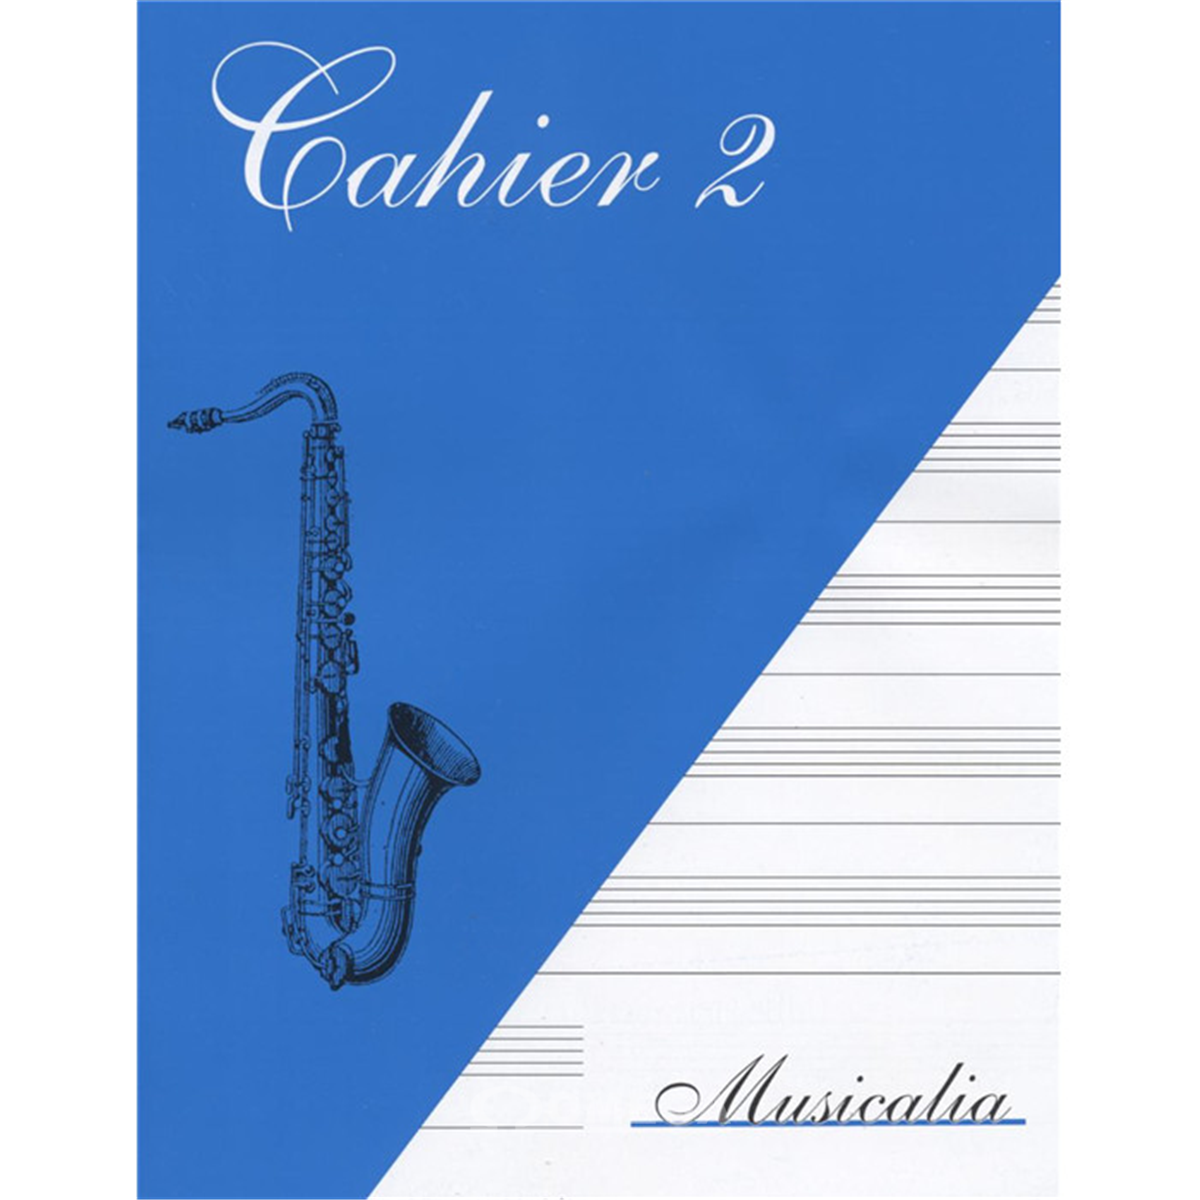 SCHOTT Cahier 2 Musicalia - Lignes & Portées A5